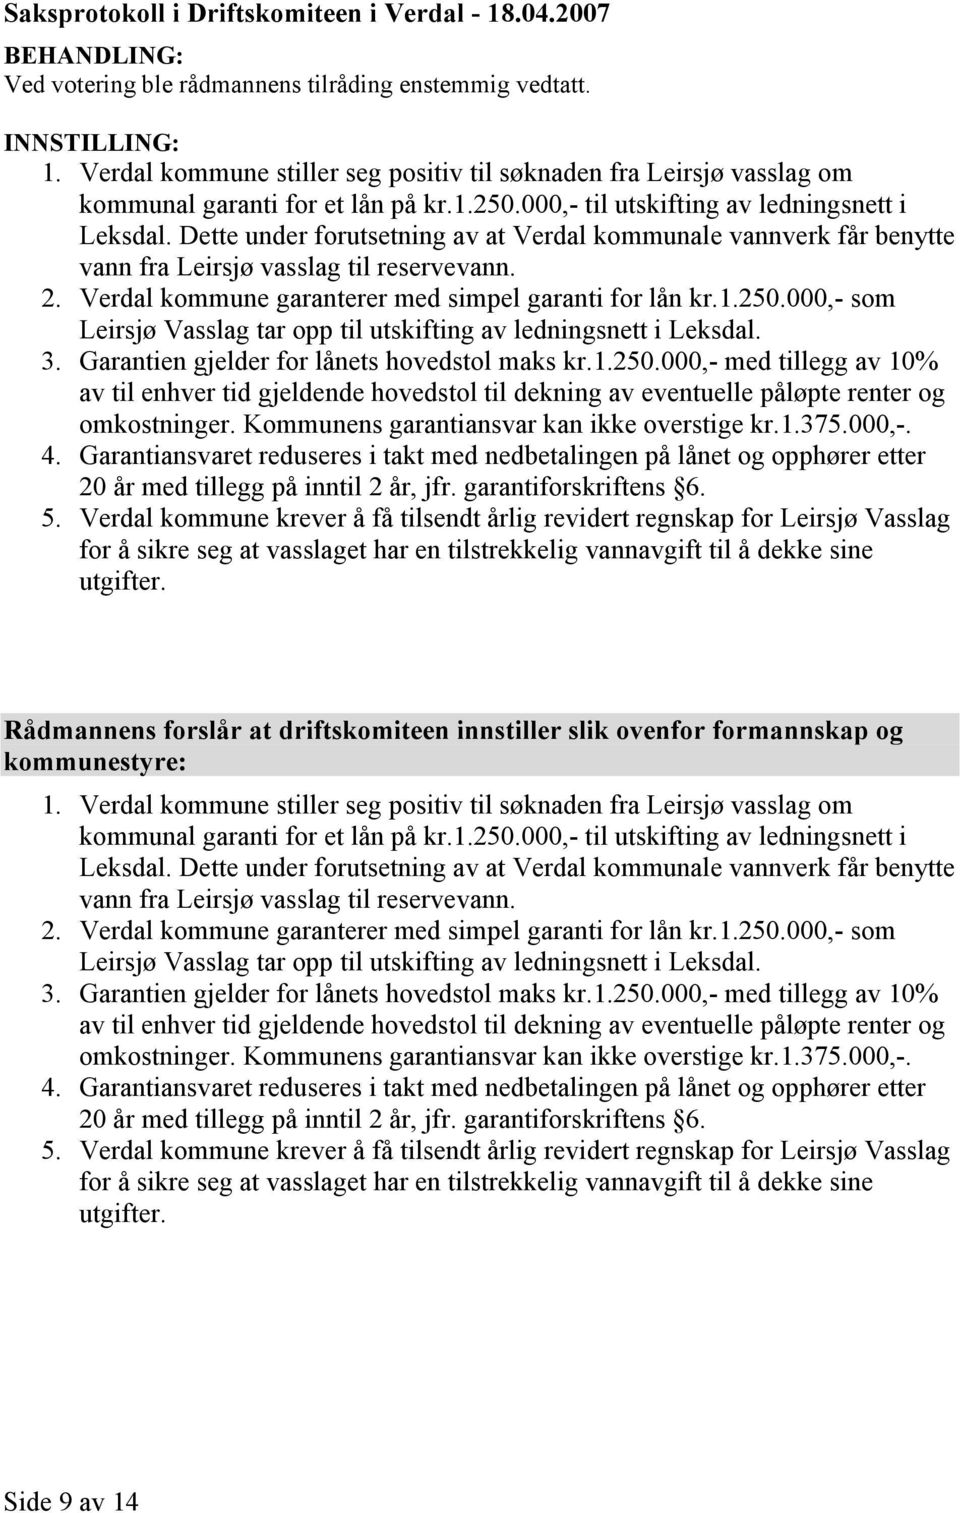 Dette under forutsetning av at Verdal kommunale vannverk får benytte vann fra Leirsjø vasslag til reservevann. 2. Verdal kommune garanterer med simpel garanti for lån kr.1.250.